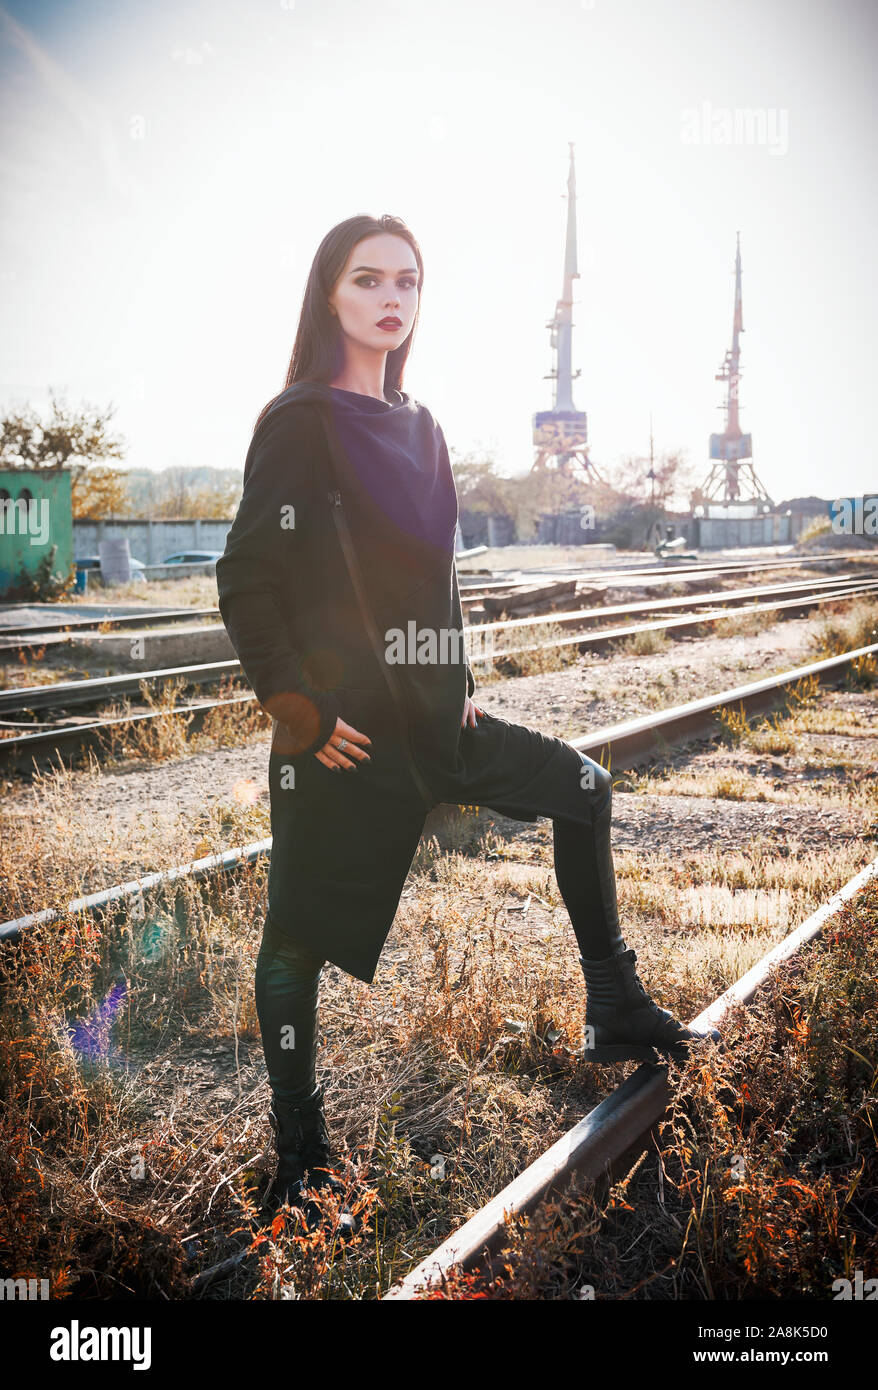 Fashion shot : portrait de la jolie fille rock (modèle informel) dans une tunique et un pantalon en cuir debout à rails (zone industrielle) Banque D'Images